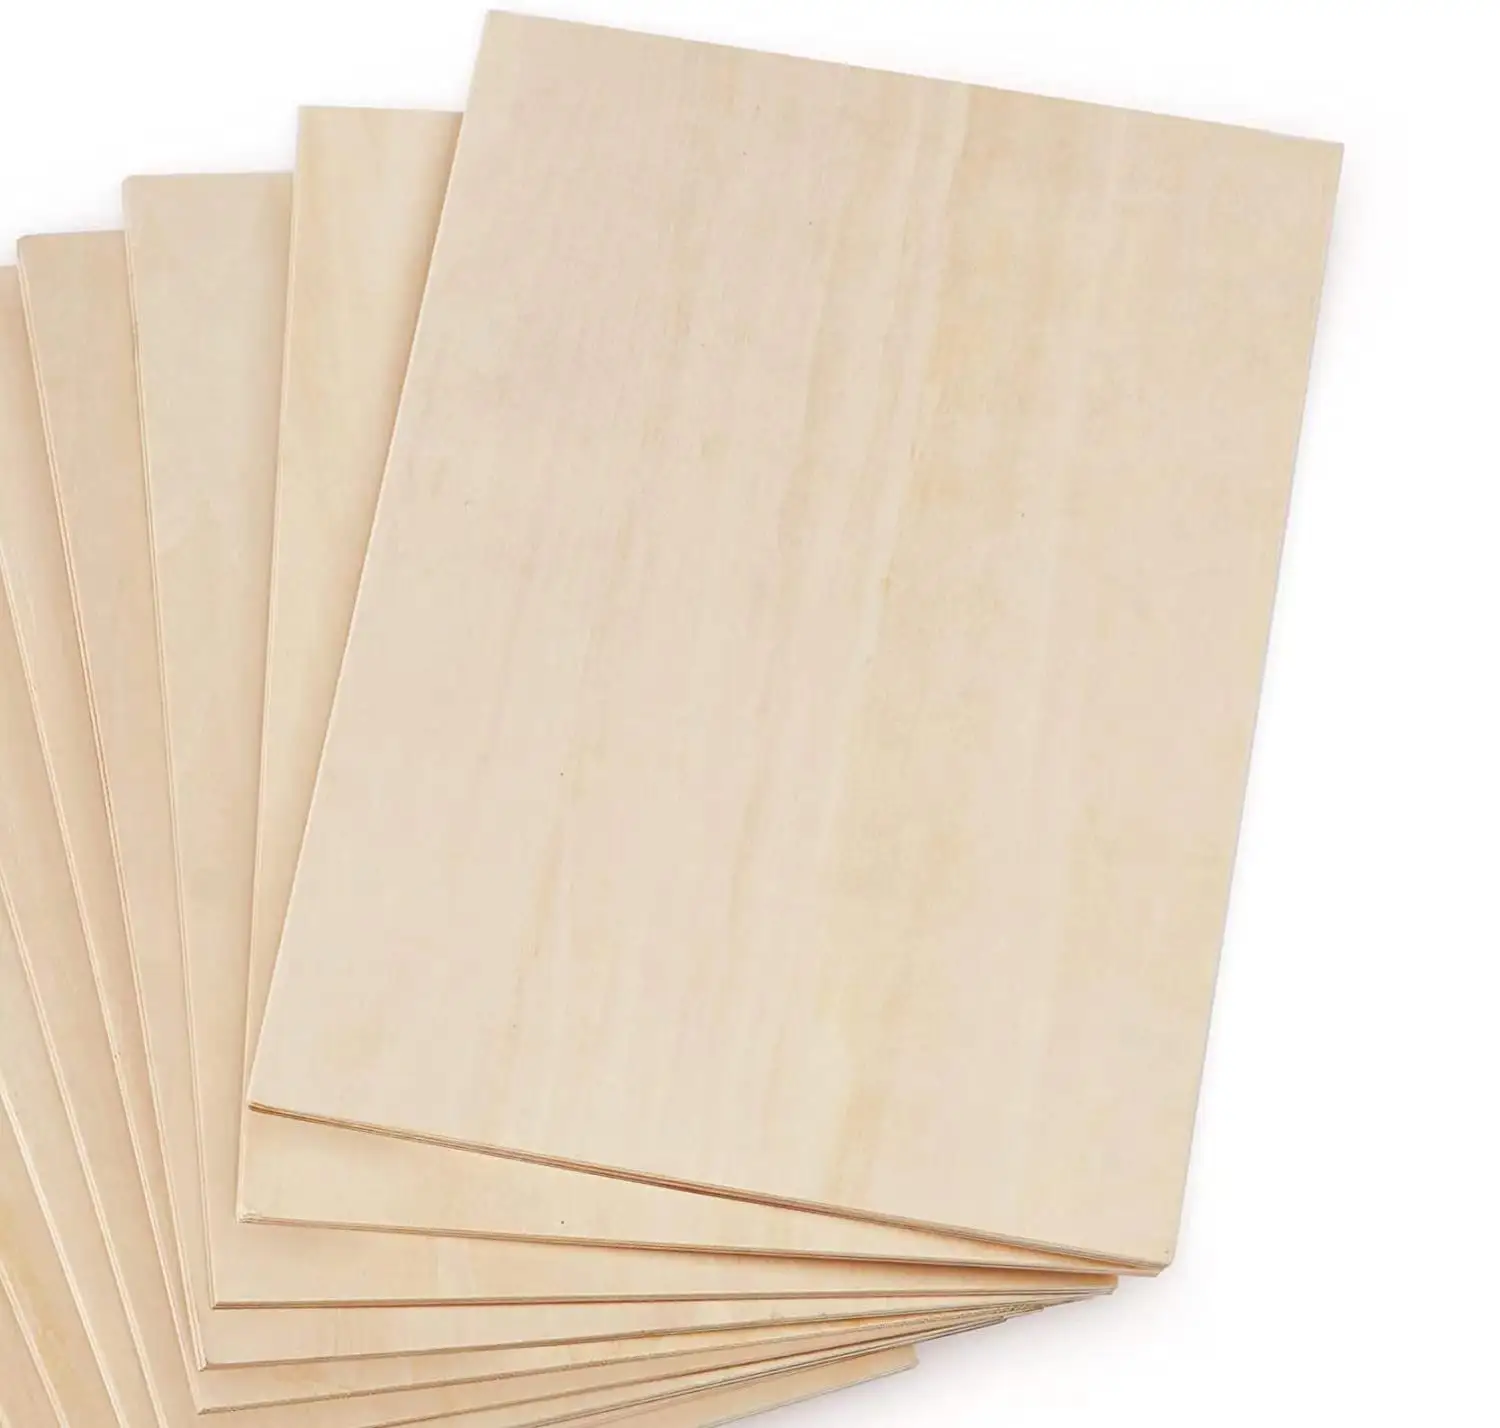 Kainice-hojas de madera contrachapada personalizadas, 3mm, tilo laminado de madera fina cuadrada, materiales artesanales para pintar, Material de modelo de avión